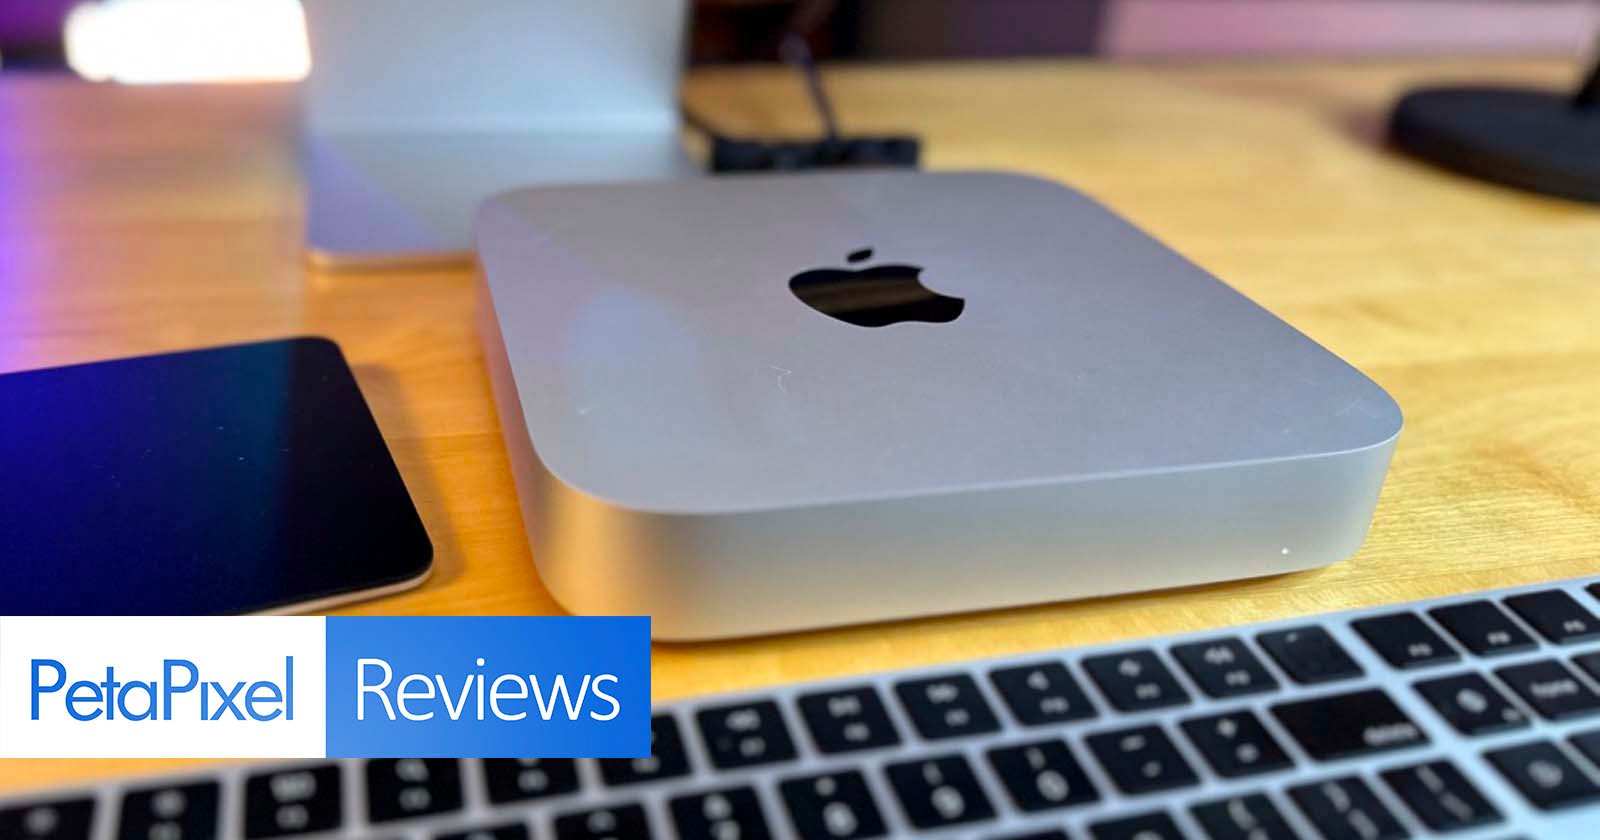 Mac mini review (M2 Pro, 2023): Just call it a Mac mini Pro